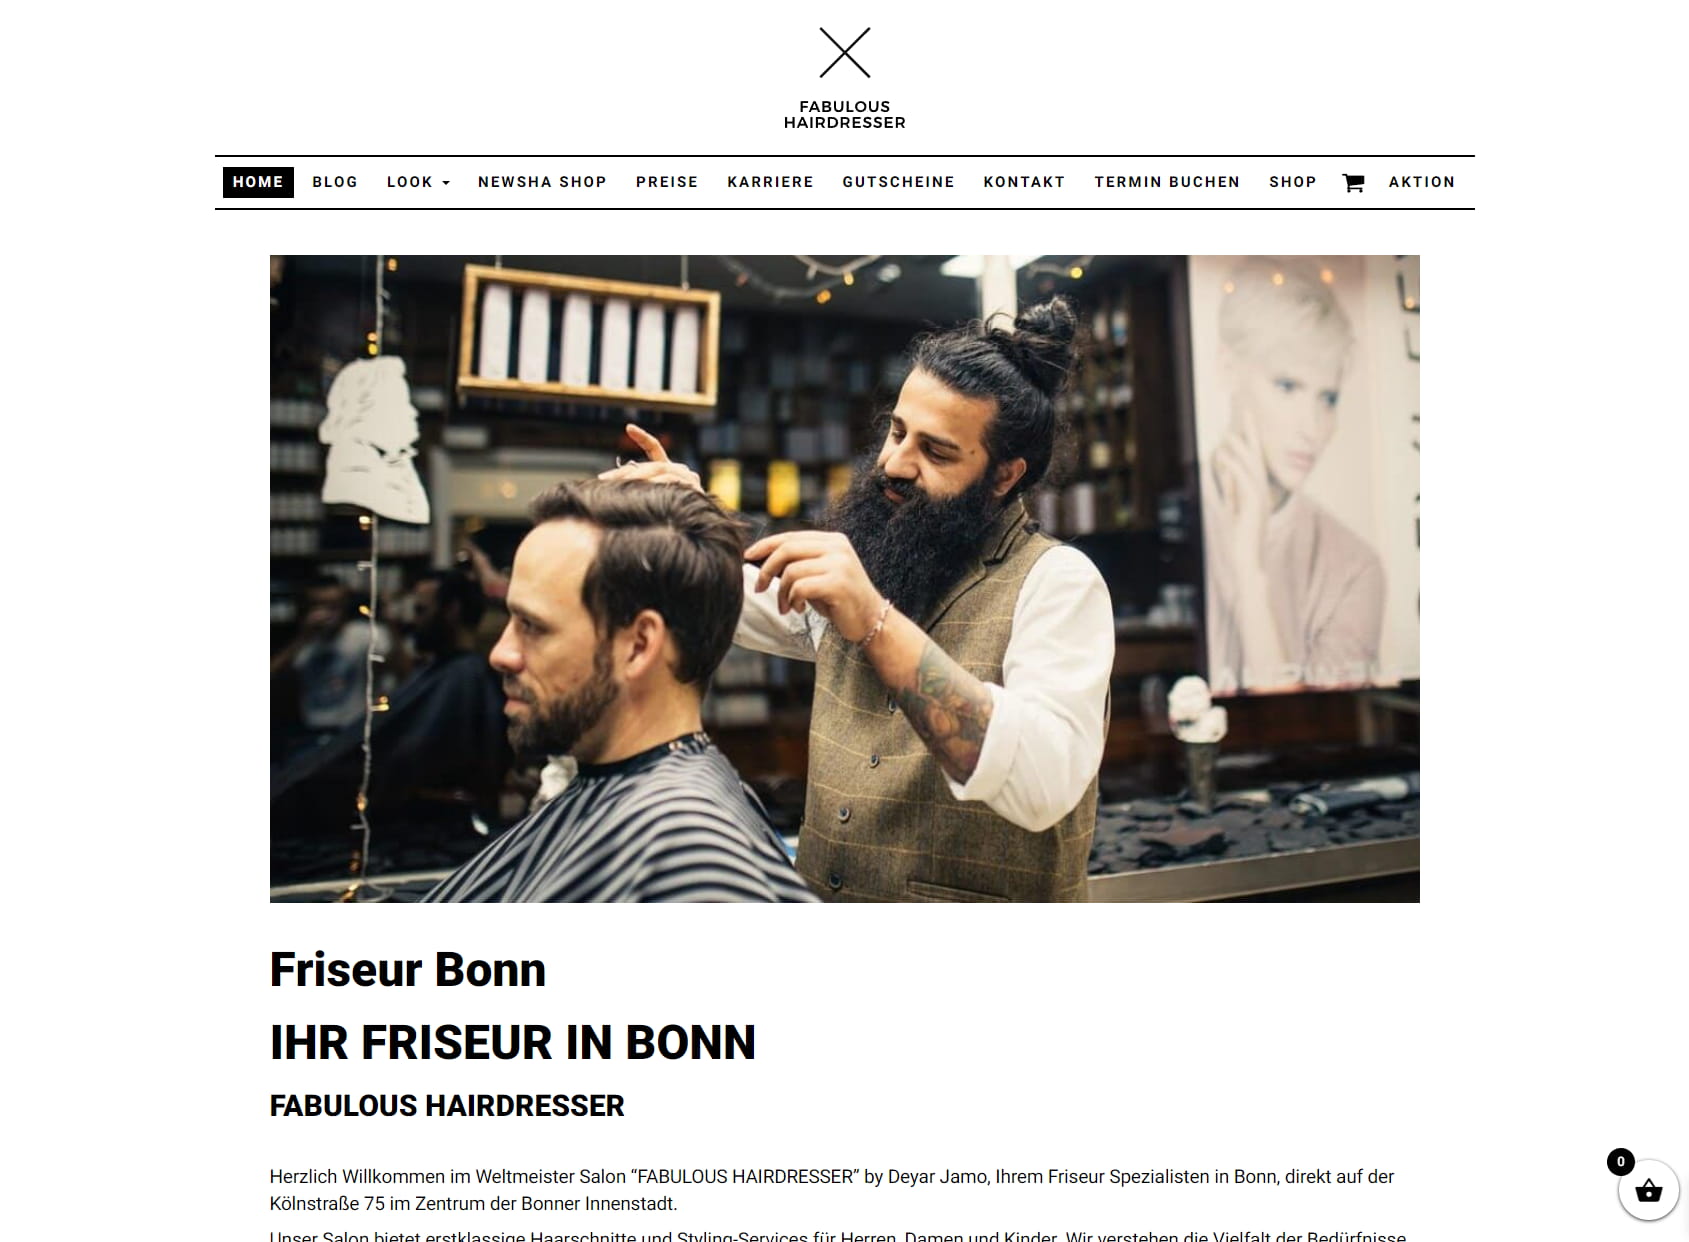 Fabulous Hairdresser in Bonn